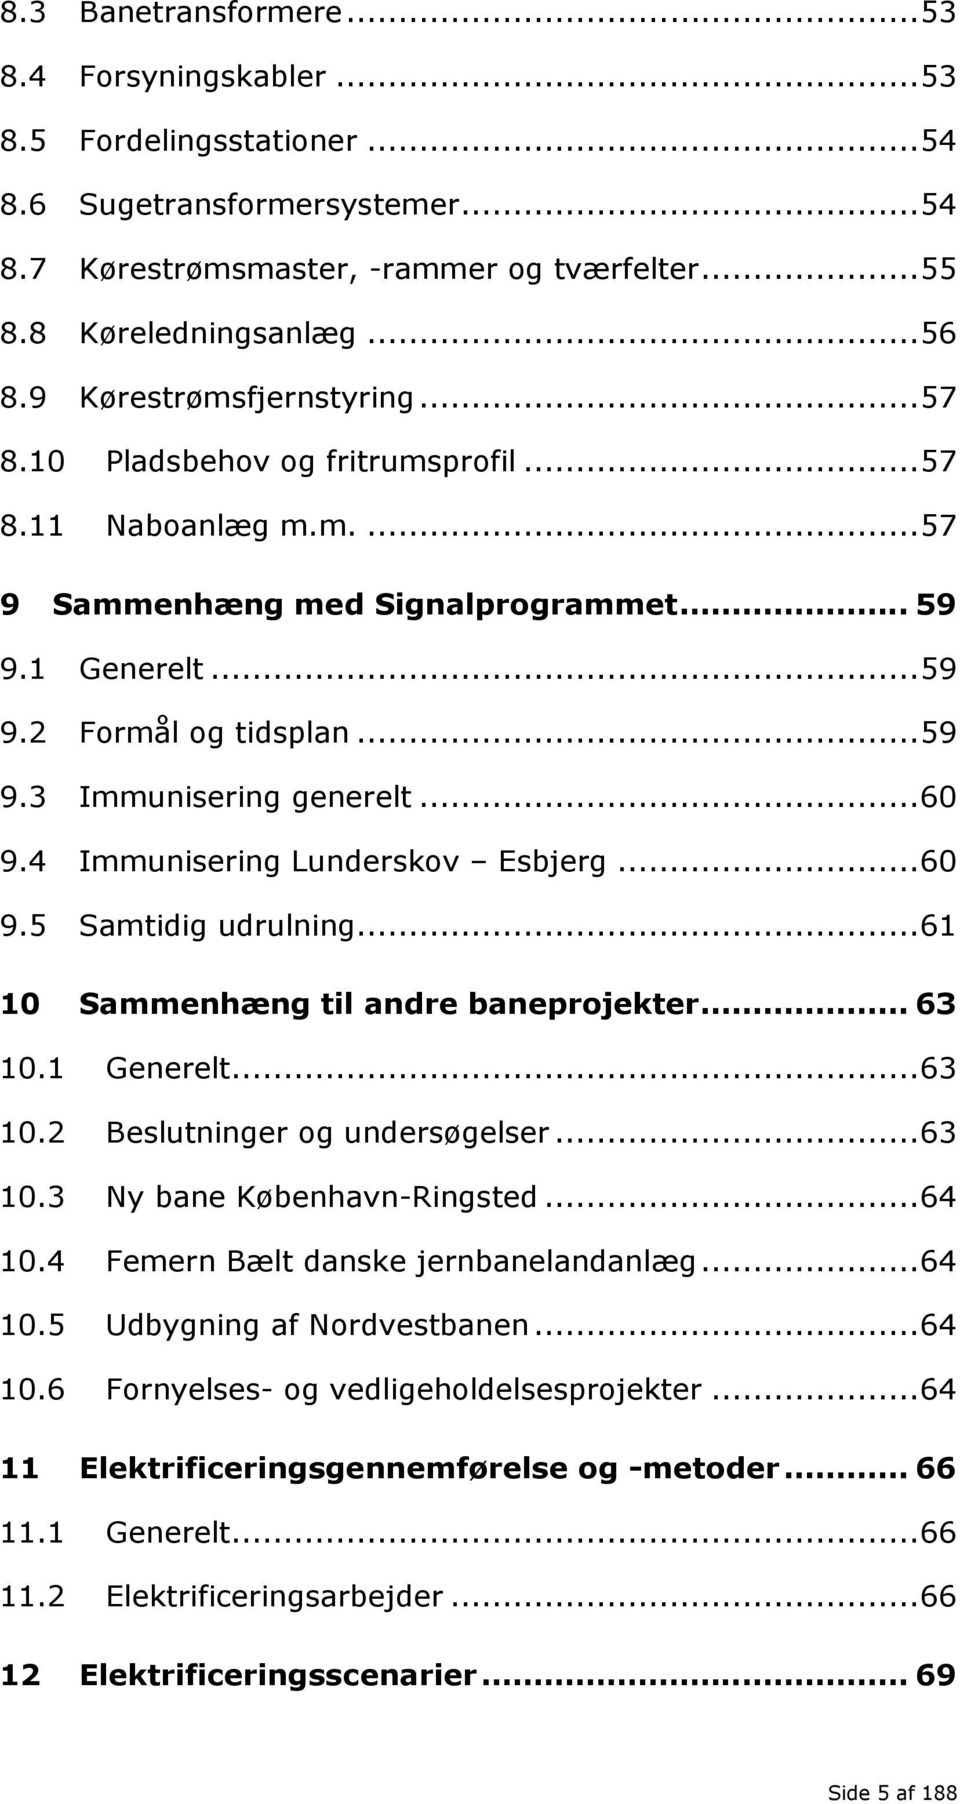 .. 60 9.4 Immunisering Lunderskov Esbjerg... 60 9.5 Samtidig udrulning... 61 10 Sammenhæng til andre baneprojekter... 63 10.1 Generelt... 63 10.2 Beslutninger og undersøgelser... 63 10.3 Ny bane København-Ringsted.